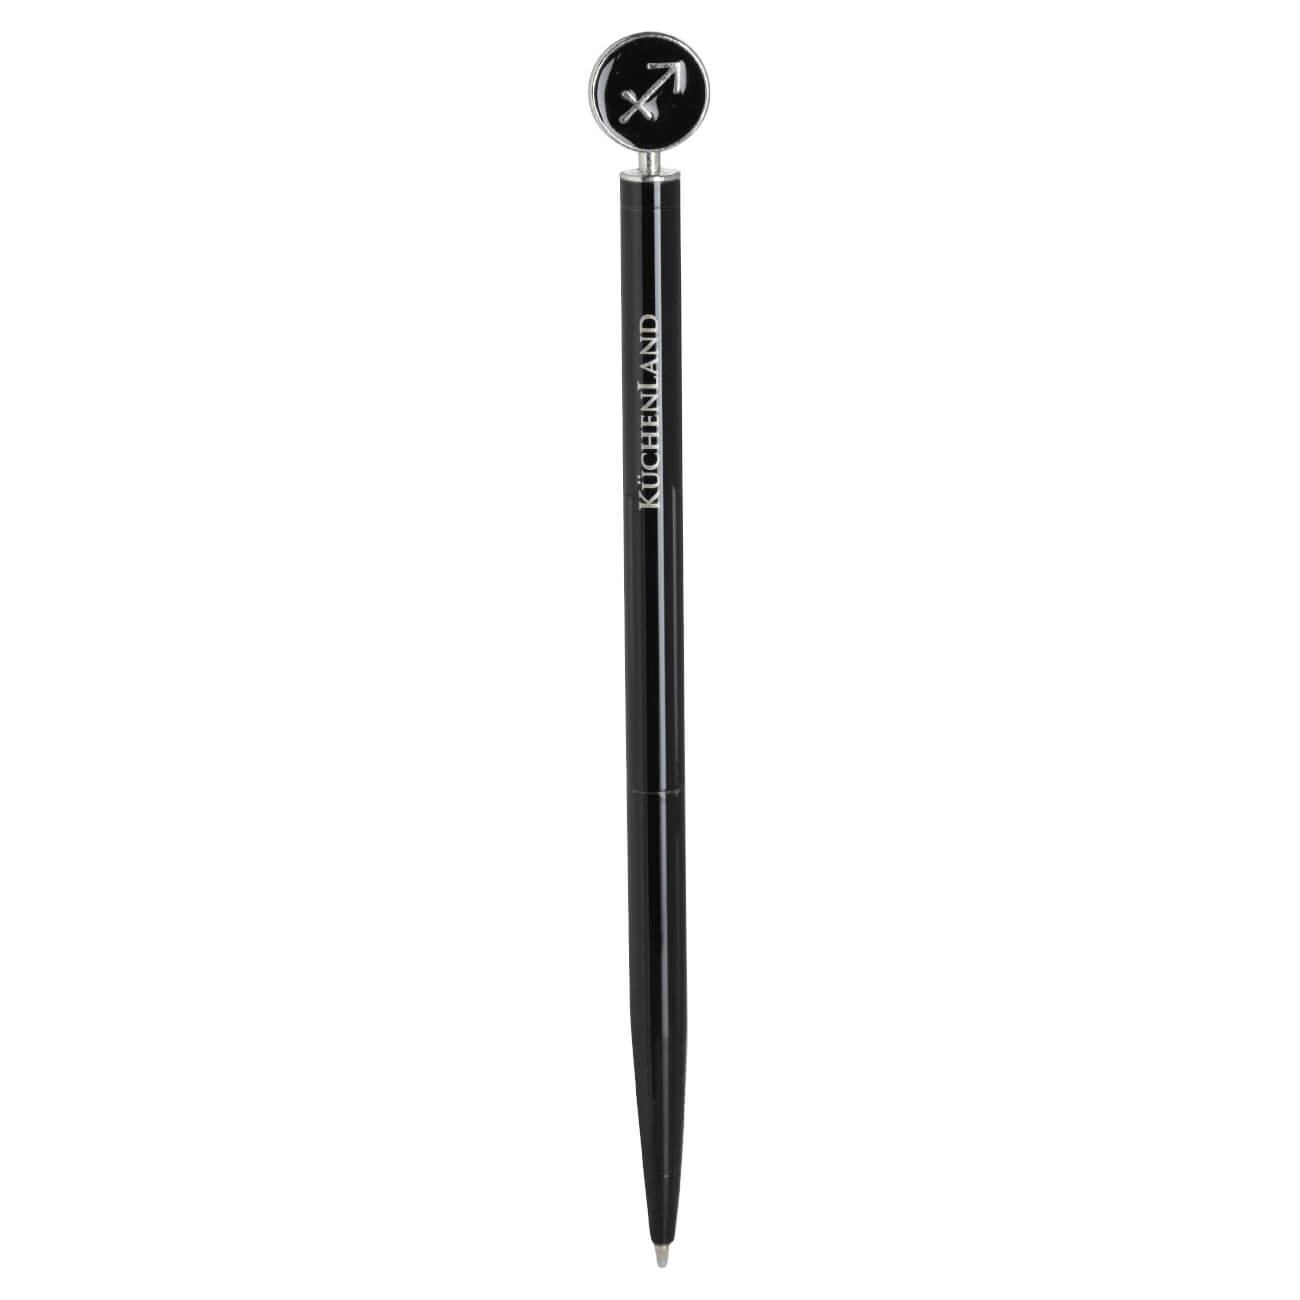 Ручка шариковая, 15 см, с фигуркой, сталь, черно-серебристая, Стрелец, Zodiac расческа грабли с конусообразными зубьями нескользящая ручка 11 х 15 5 см черно красная 743794